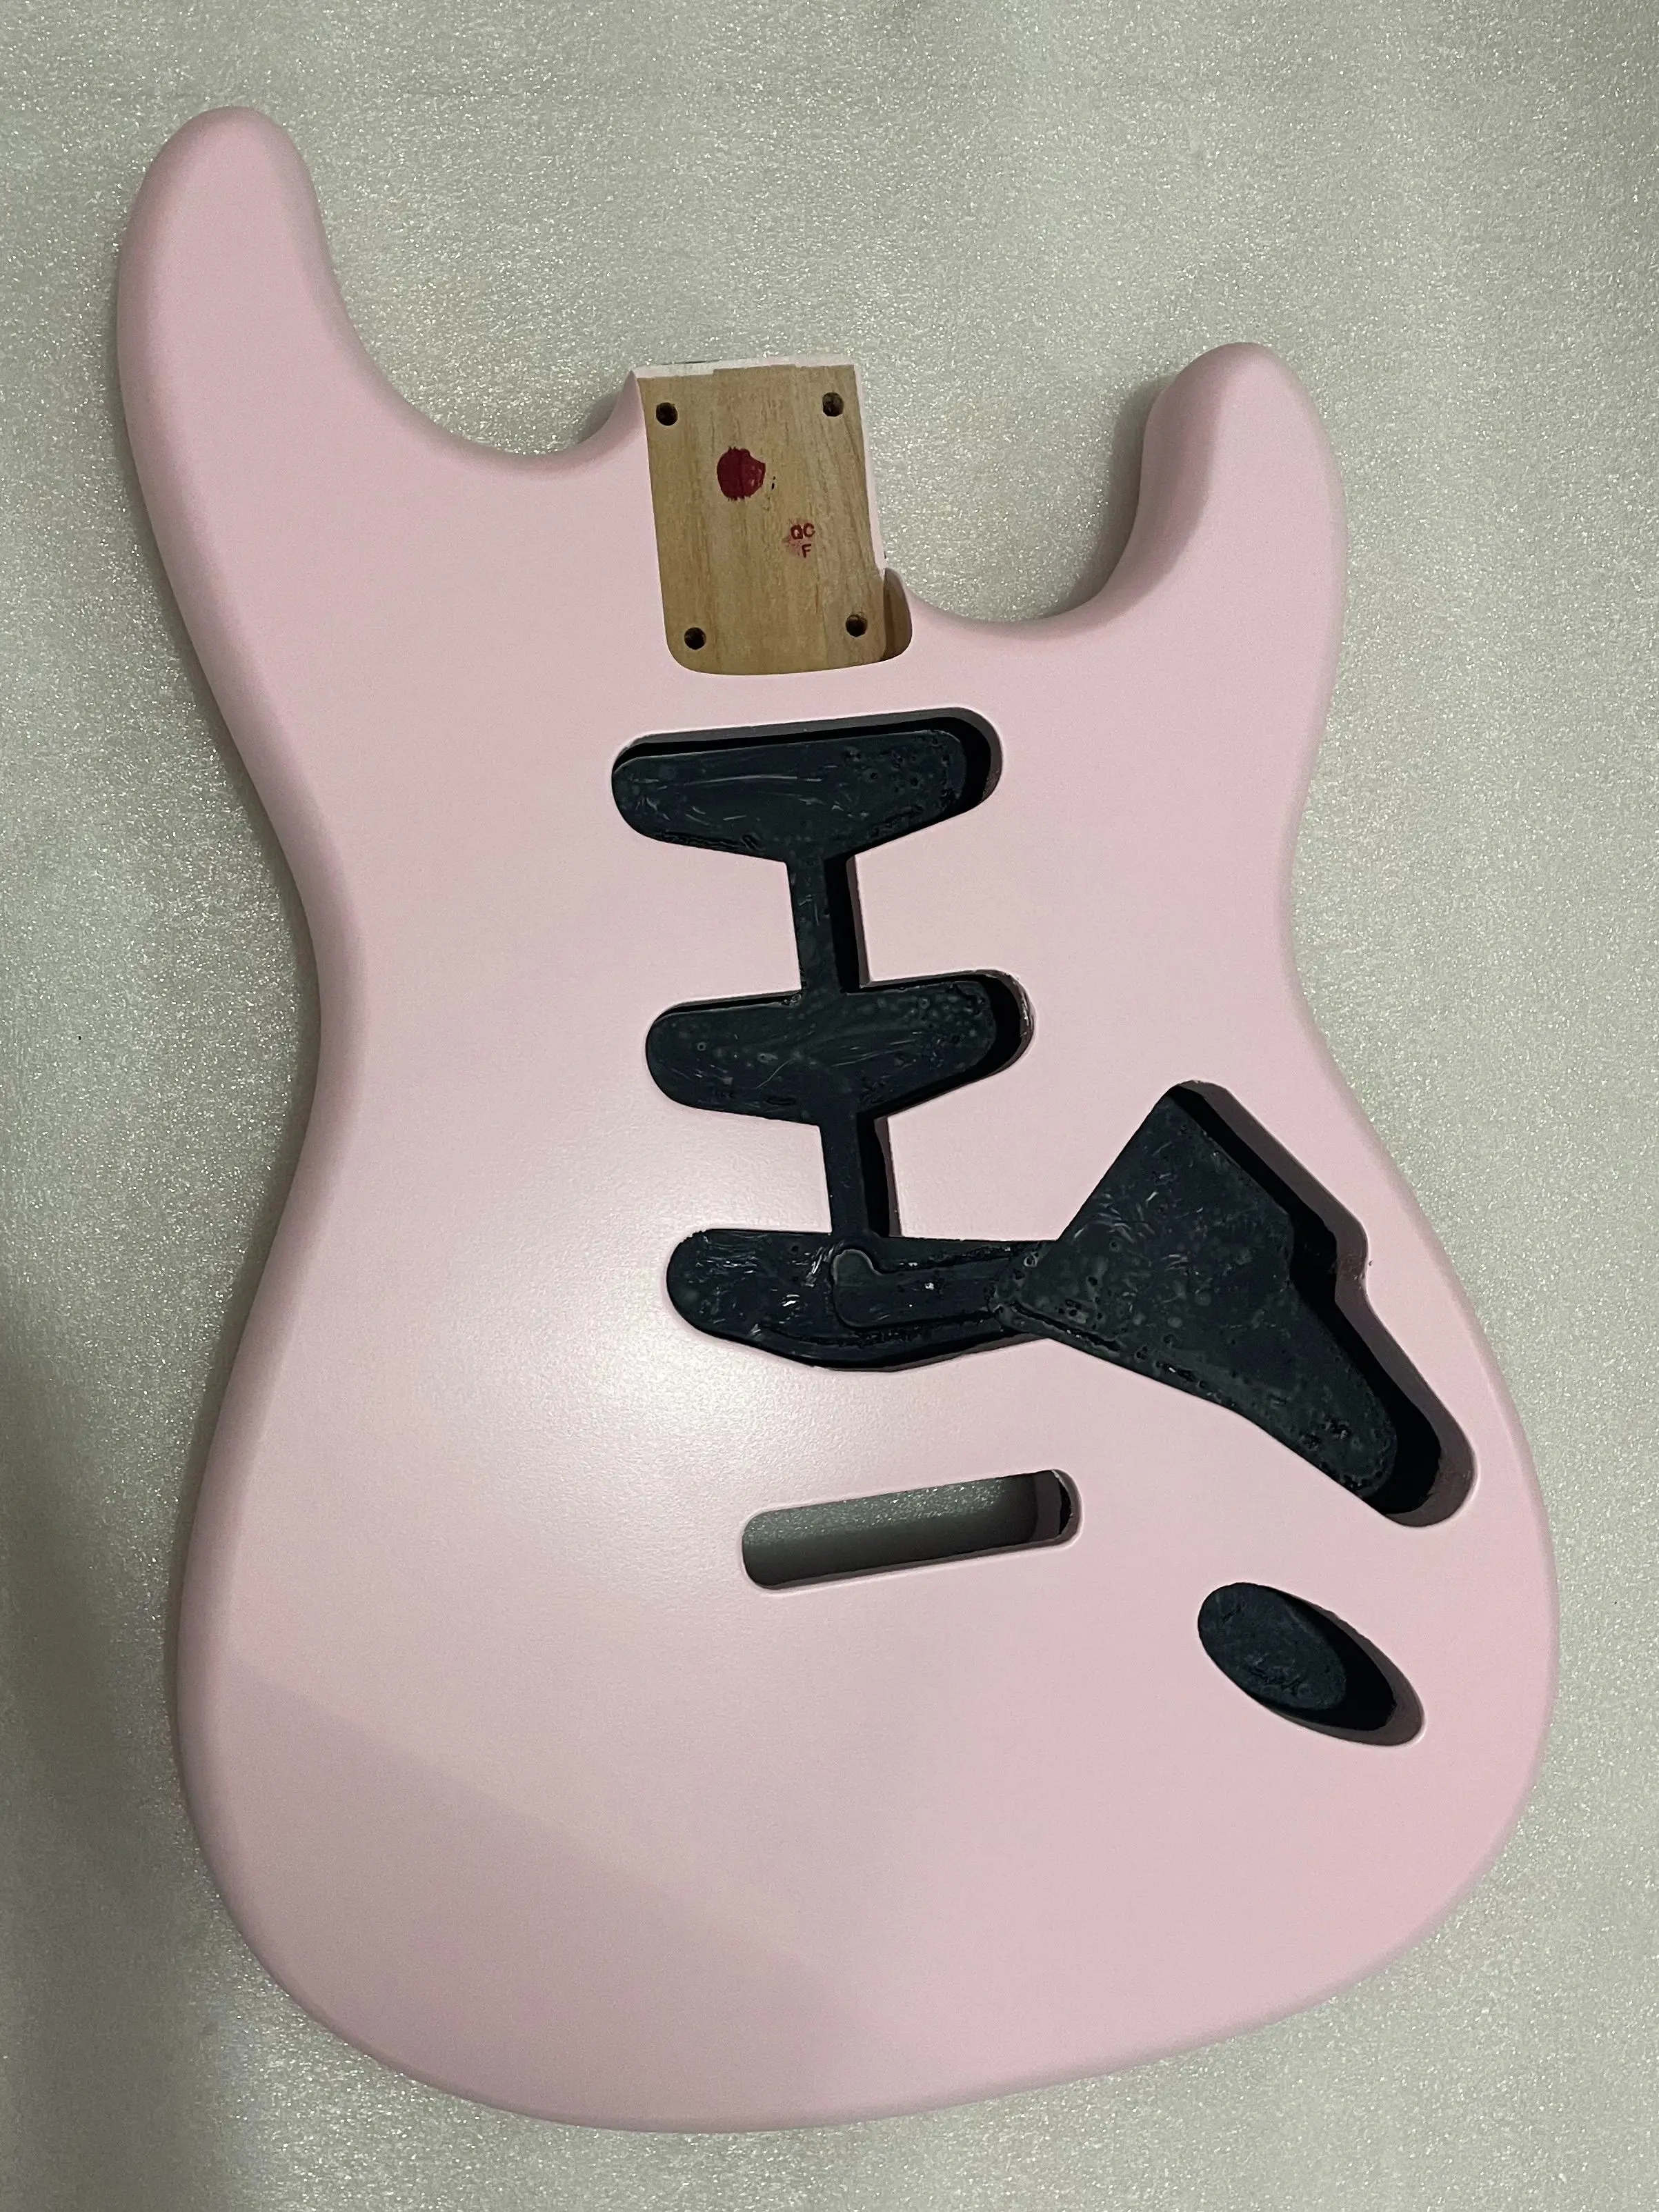 Kızılağaç Elektro Gitar Gövdesi Mat Bitmiş, DIY Yedek Parça, 6 Dizeleri Renkler, Yeni Ürün, 5.56-5.6 cm, İndirimli Fiyat